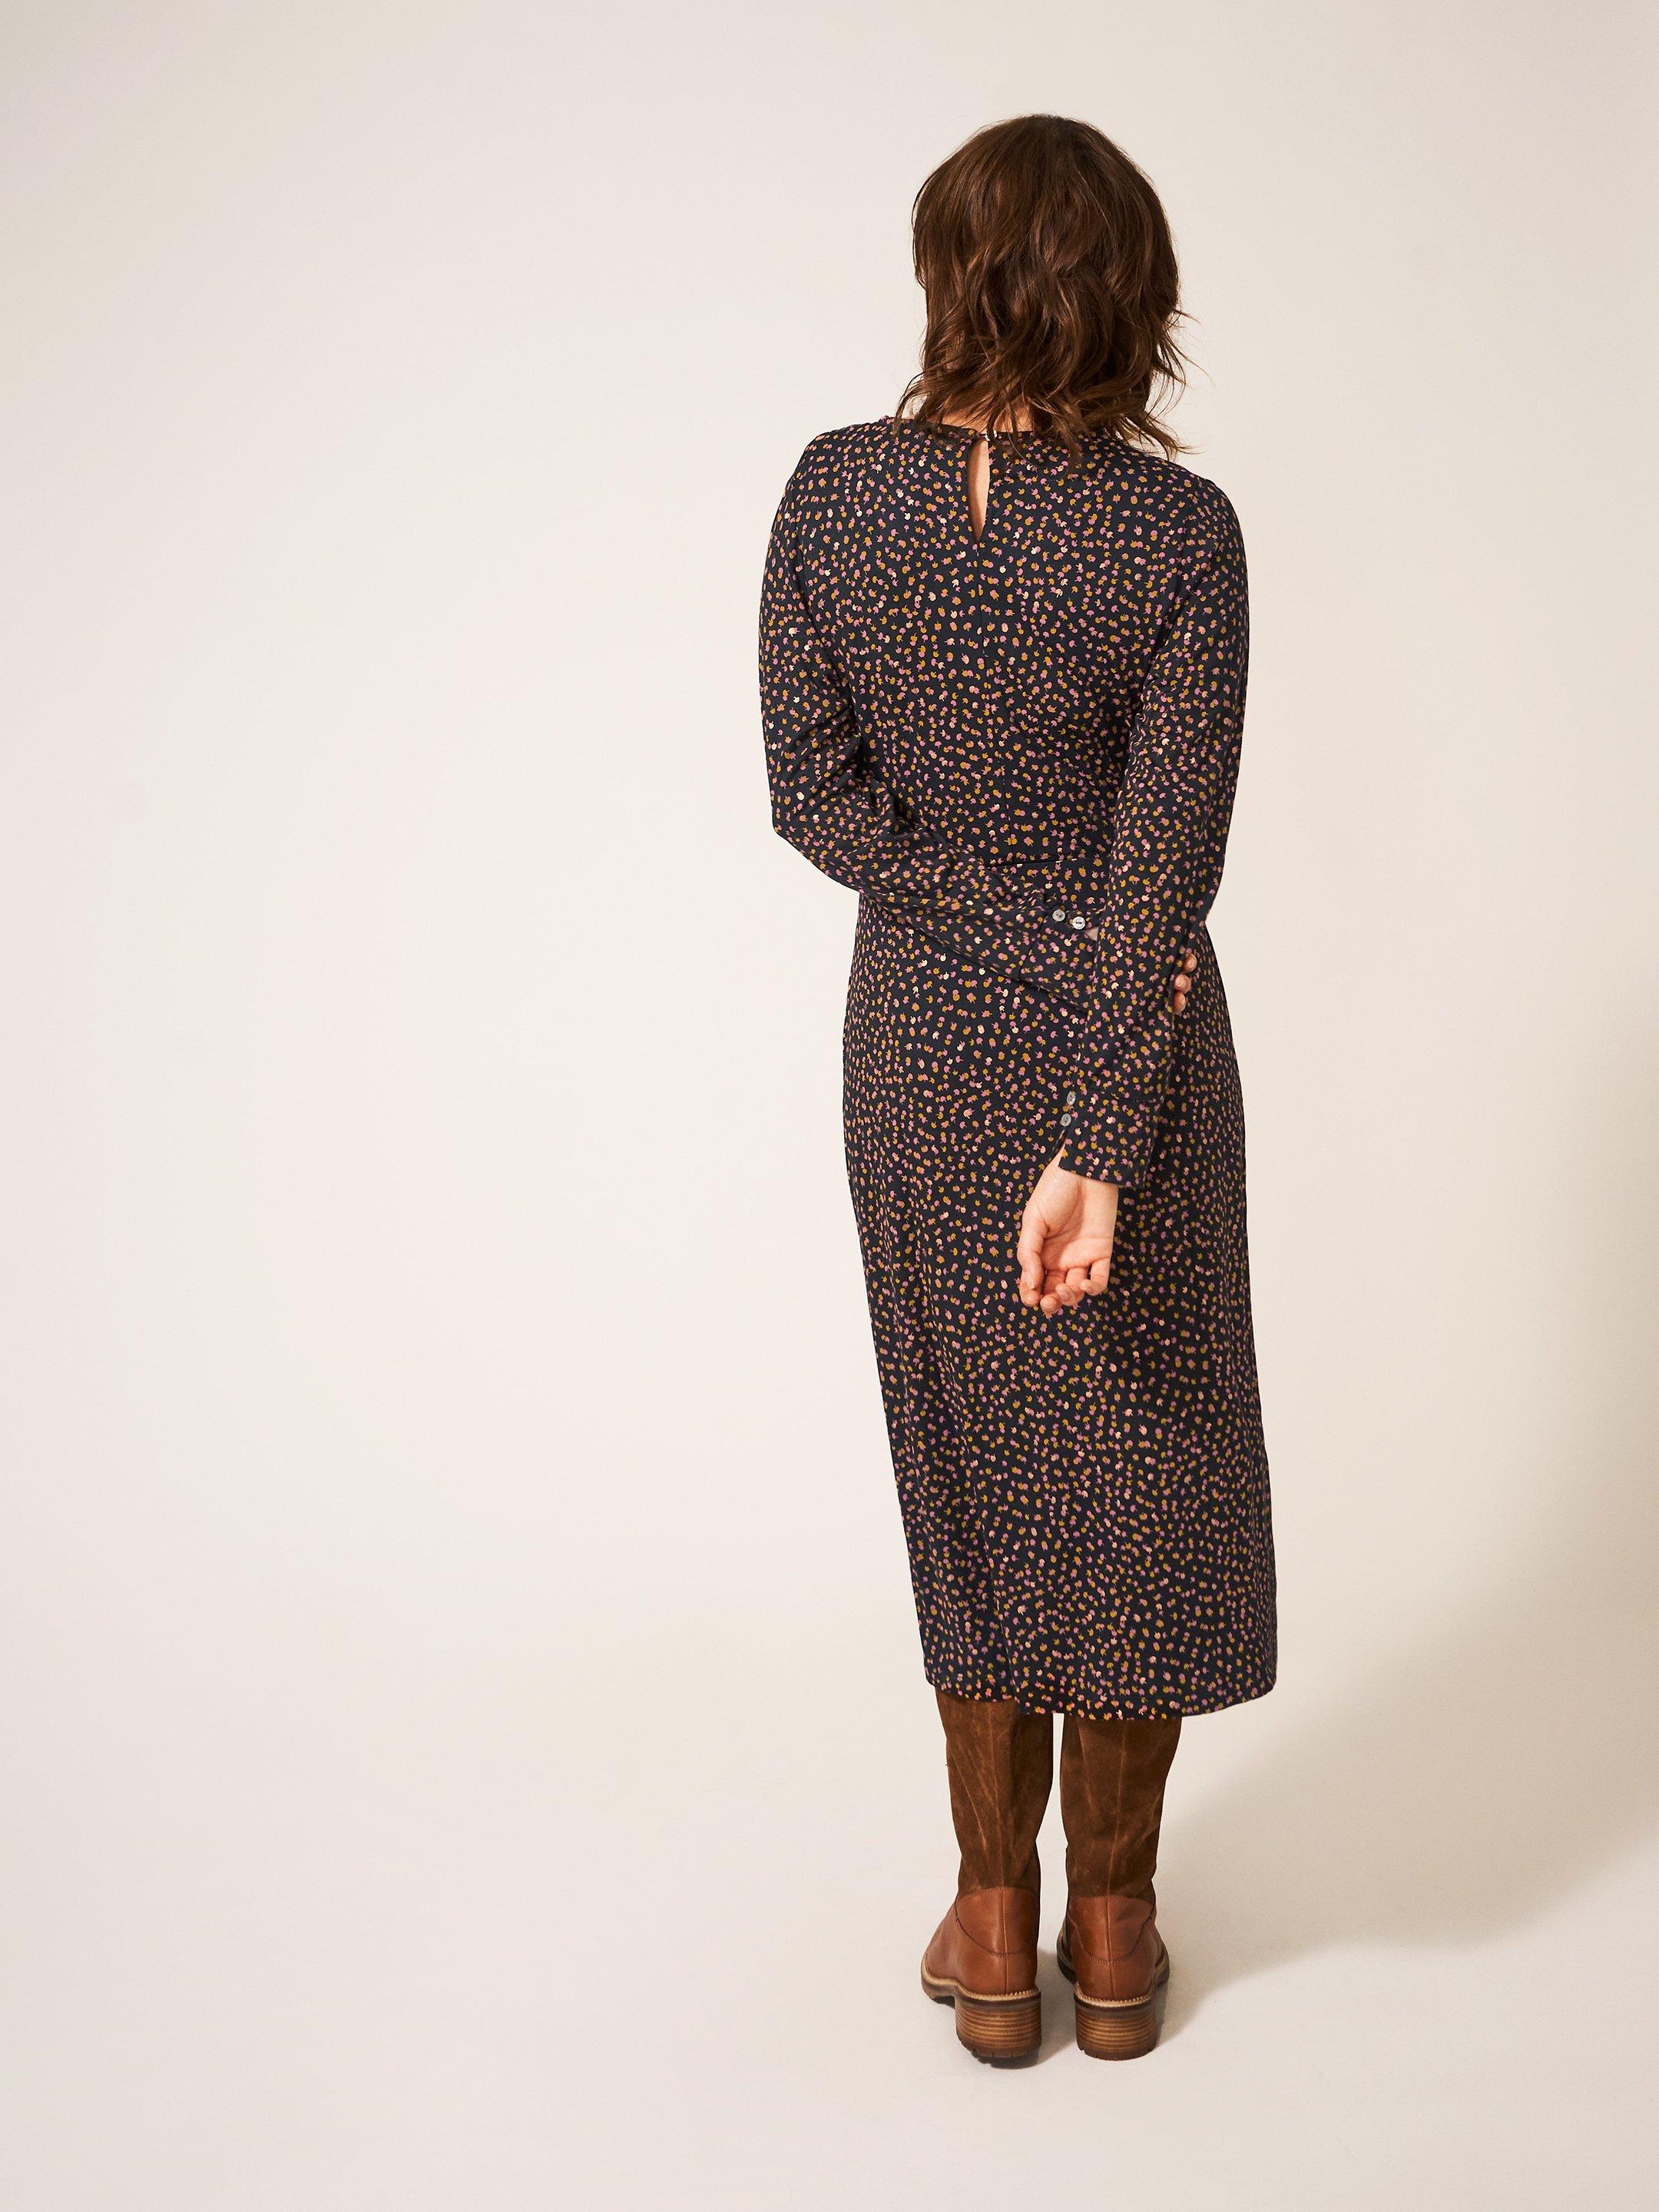 Rowan Eco Vero Jersey Dress in GREY MLT - MODEL BACK